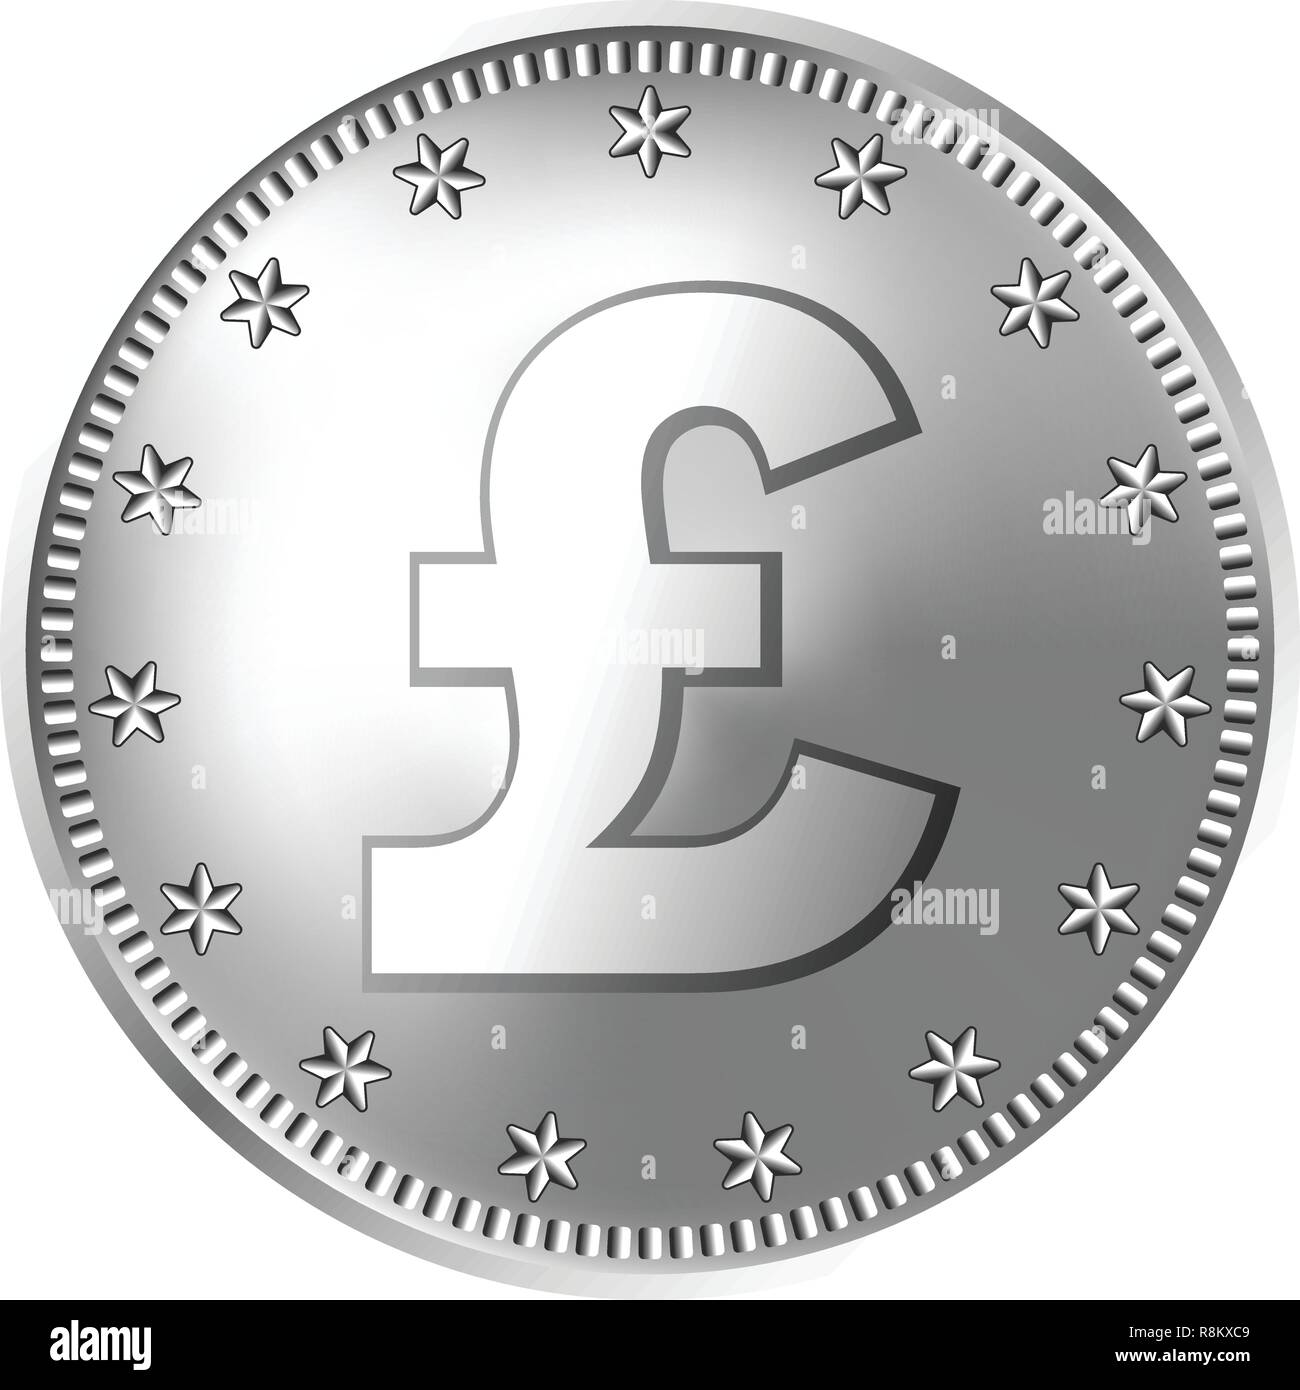 Argento Gran Bretagna sterlina moneta, Inghilterra denaro. Illustrazione Vettoriale